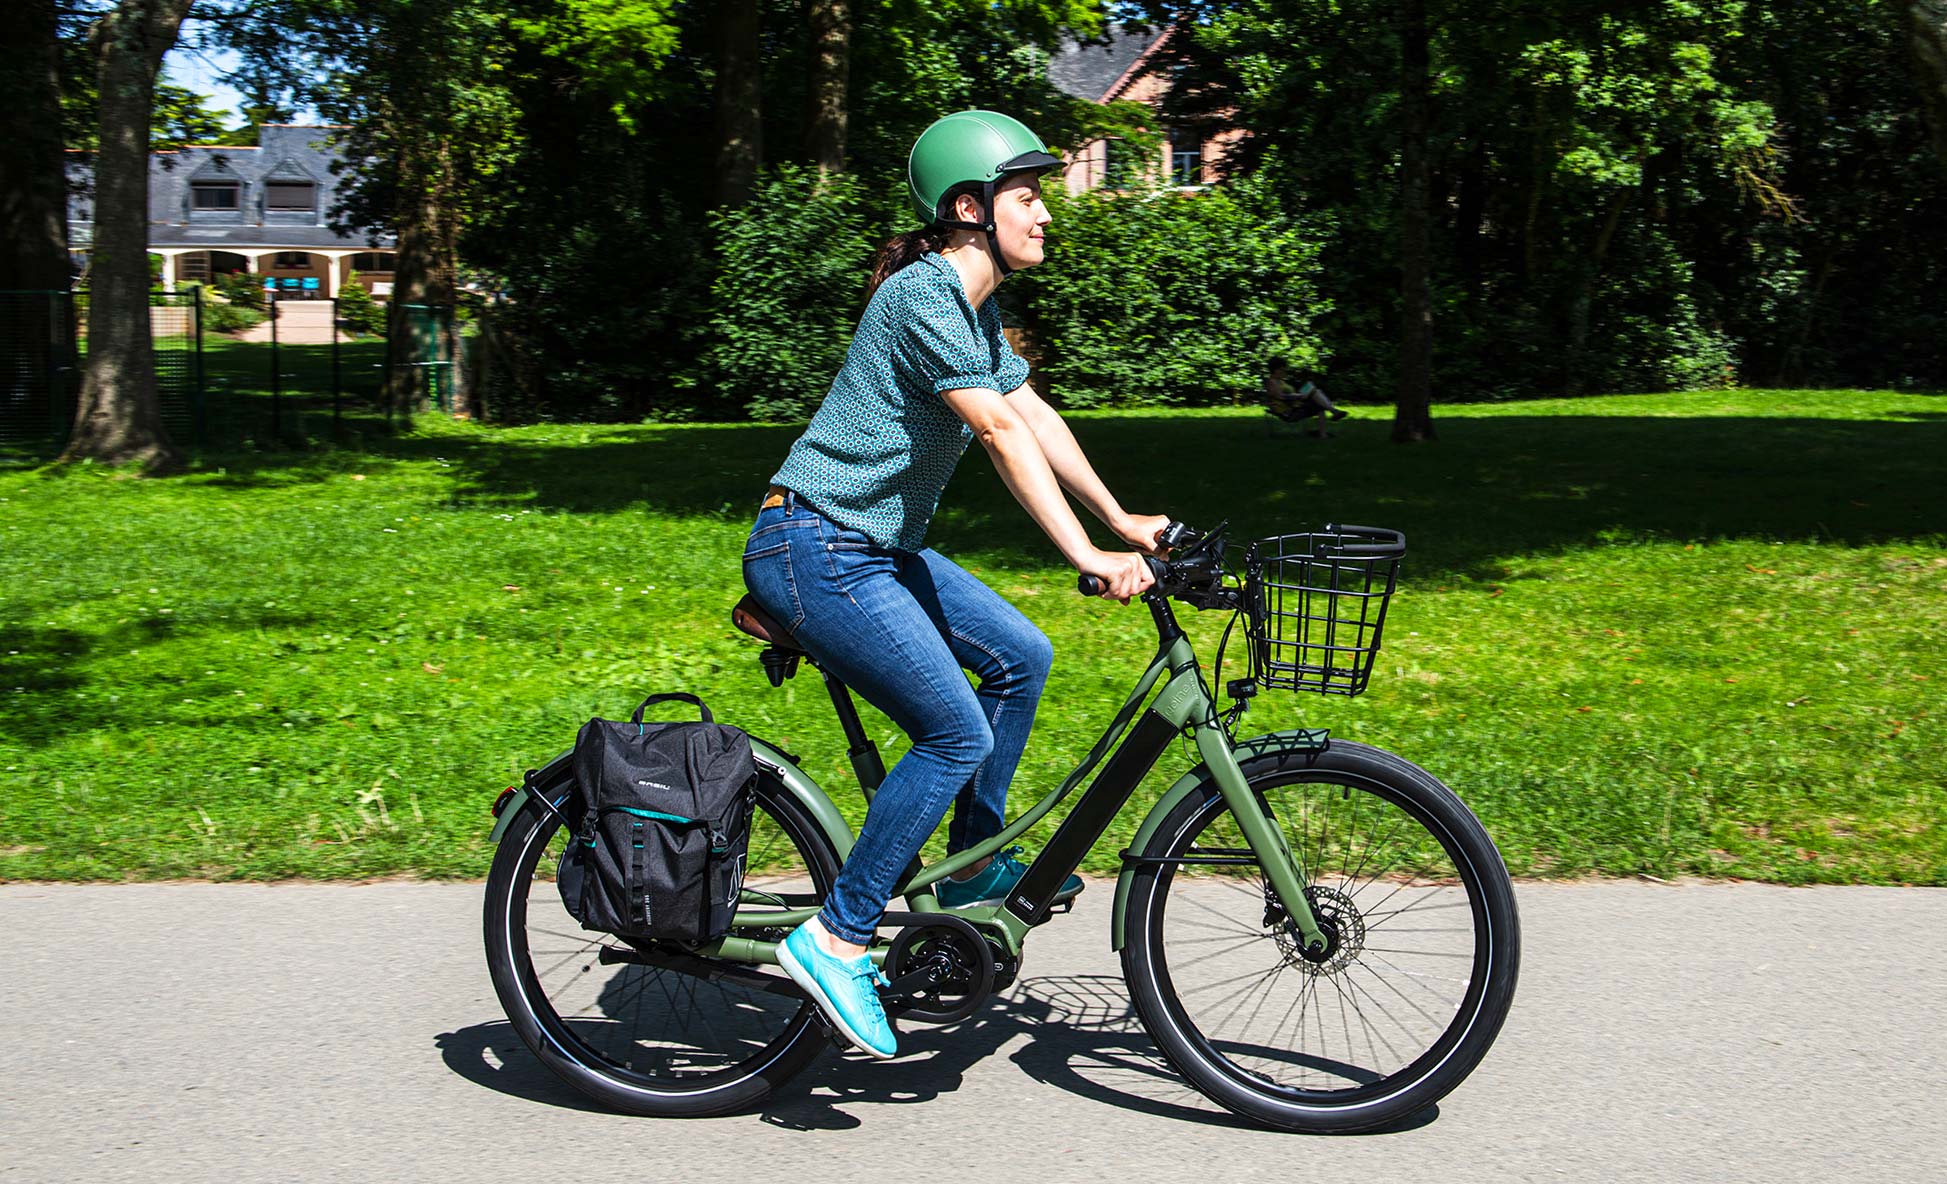 Pourquoi le vélo électrique Reine bike plaît il aux femmes ?